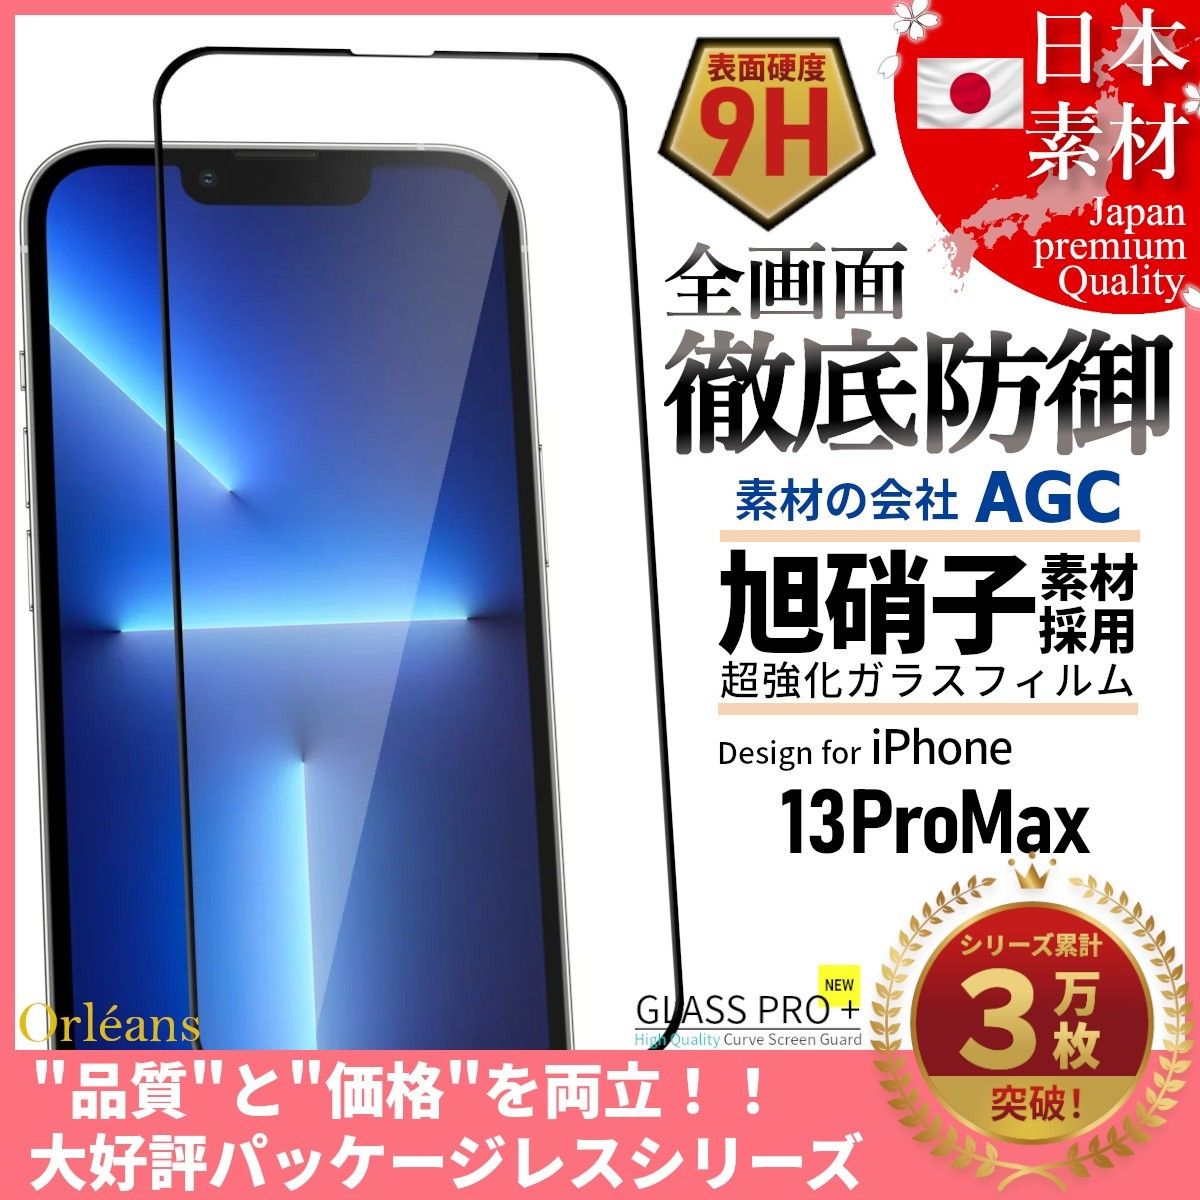 iPhone 13 ProMax 旭硝子 全面保護 強化ガラス 保護フィルム 液晶保護フィルム ガラスフィルム